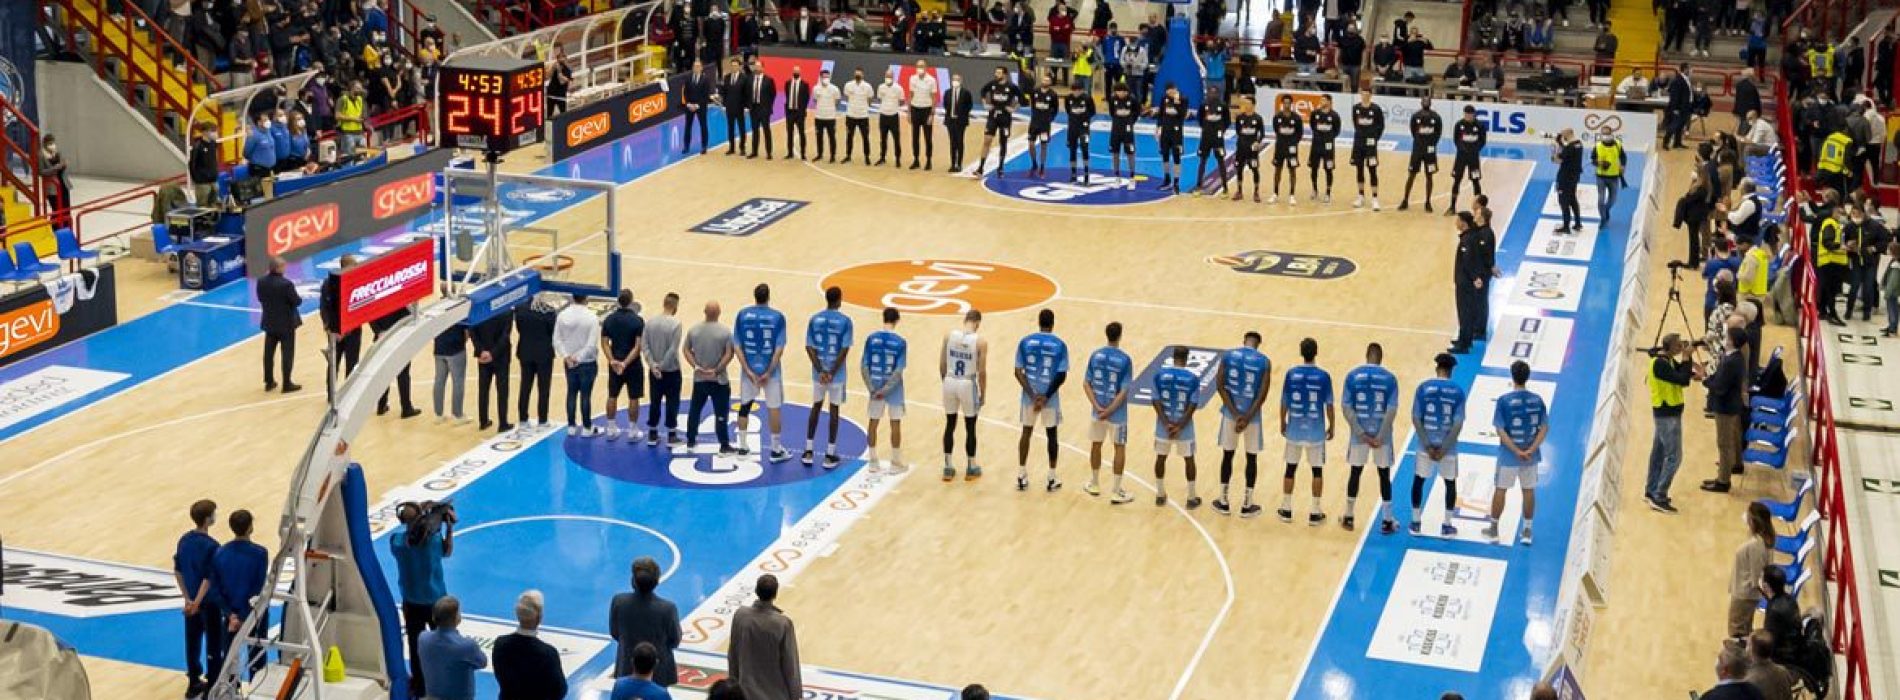 Gevi Napoli Basket, positivo il bilancio del girone d’andata